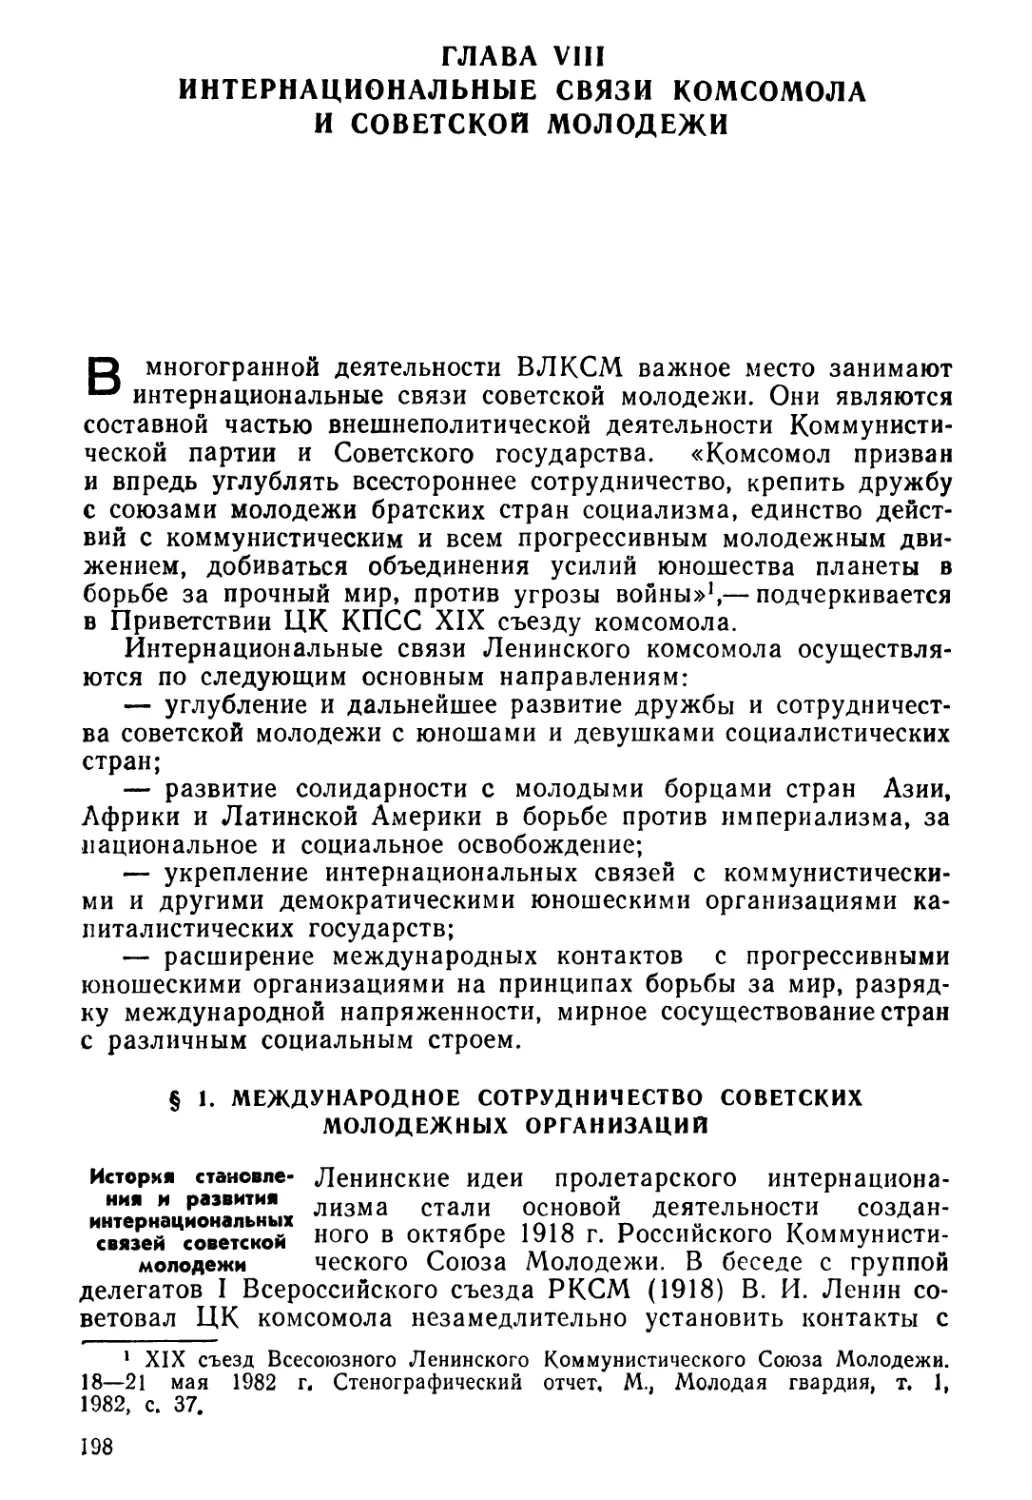 Глава VIII. Интернациональные связи комсомола и советской молодежи